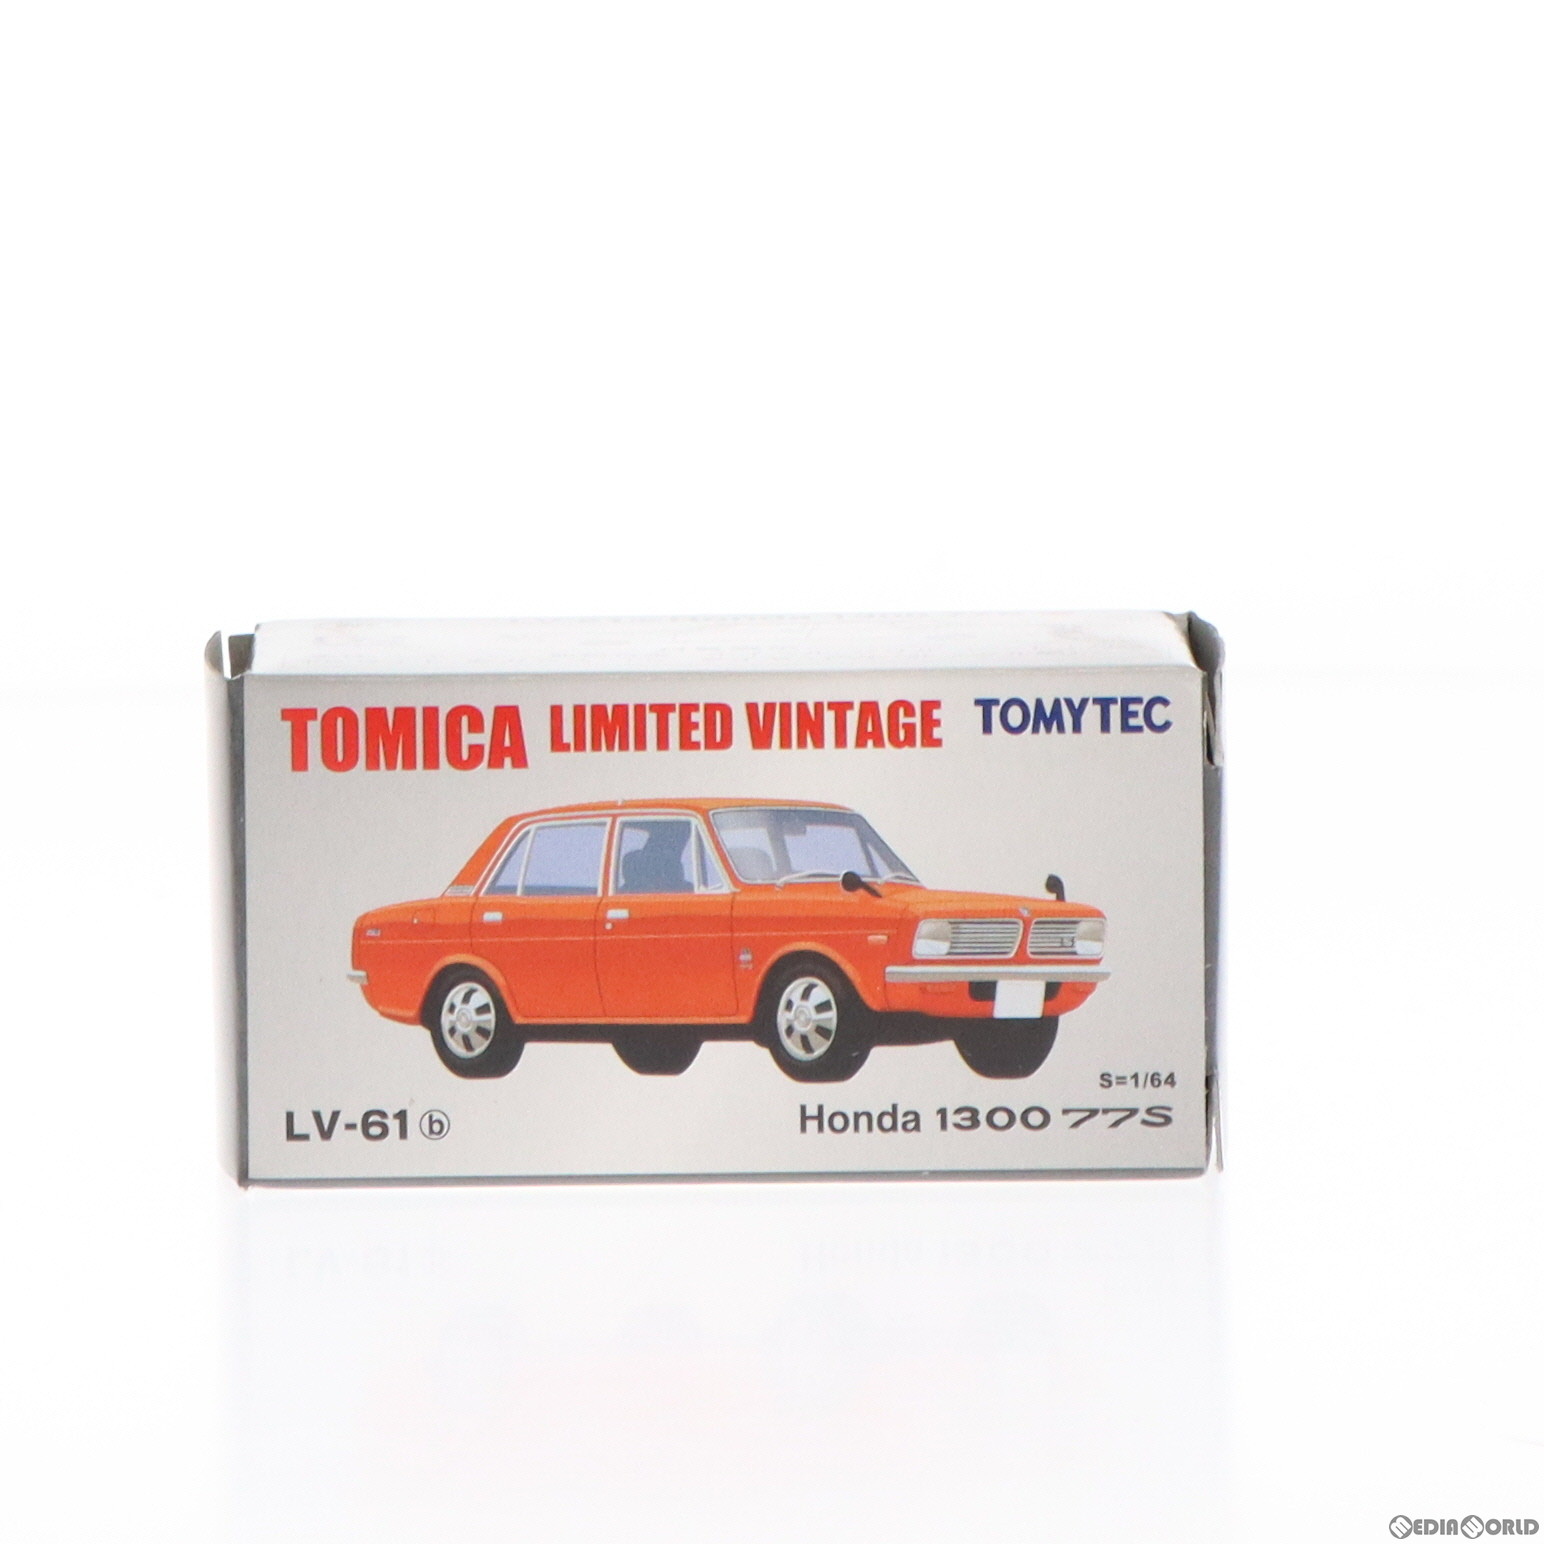 【中古】[MDL]トミカリミテッドヴィンテージ 1/64 TLV-61b Honda 1300 77S(レッド) 完成品 ミニカー(21..